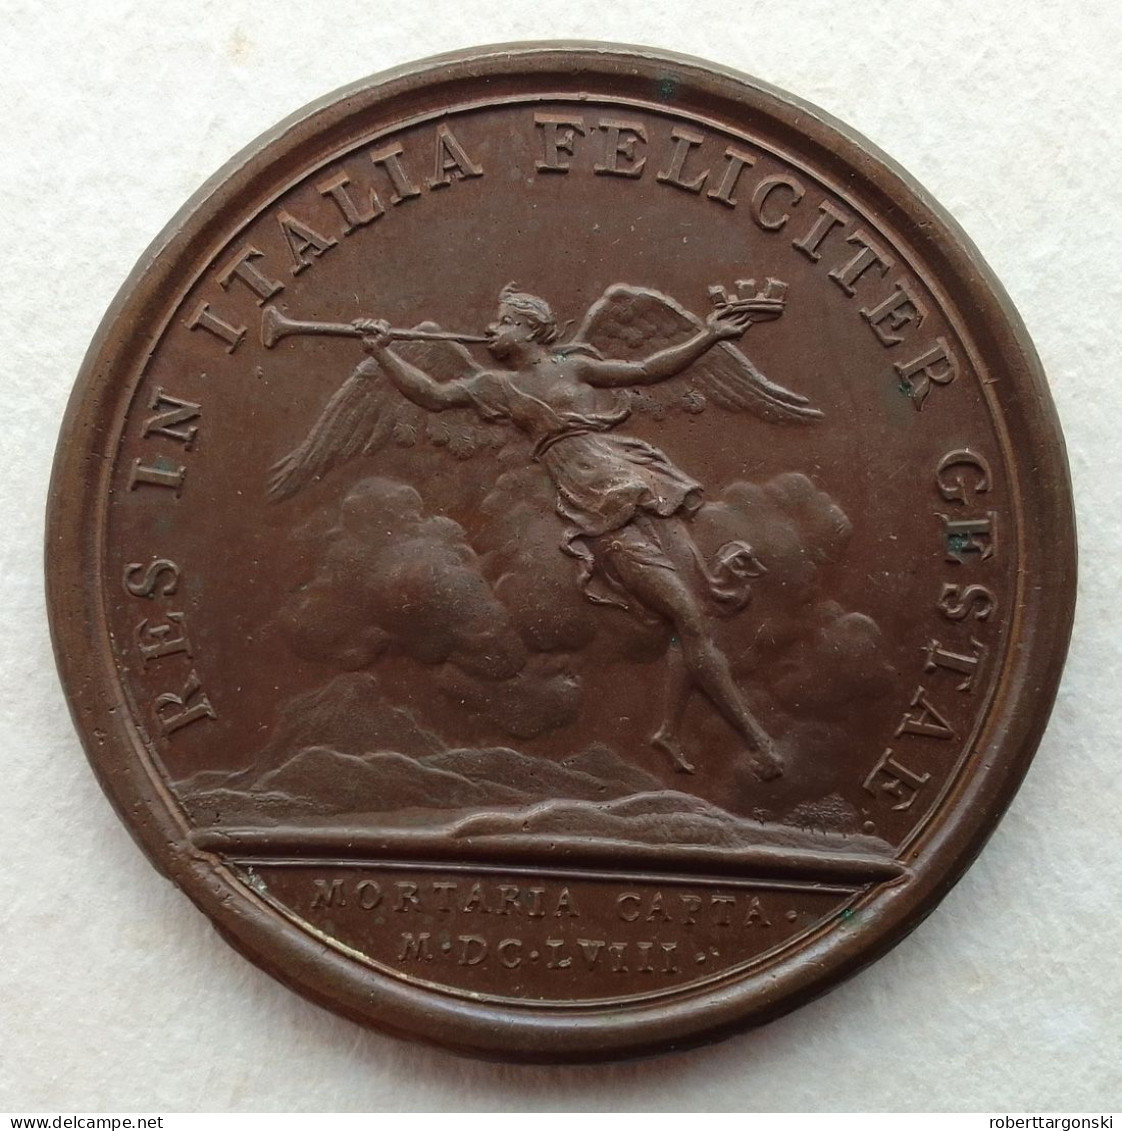 Medaille - France - Louis XIV - Mauger - 1658 - Royaux / De Noblesse